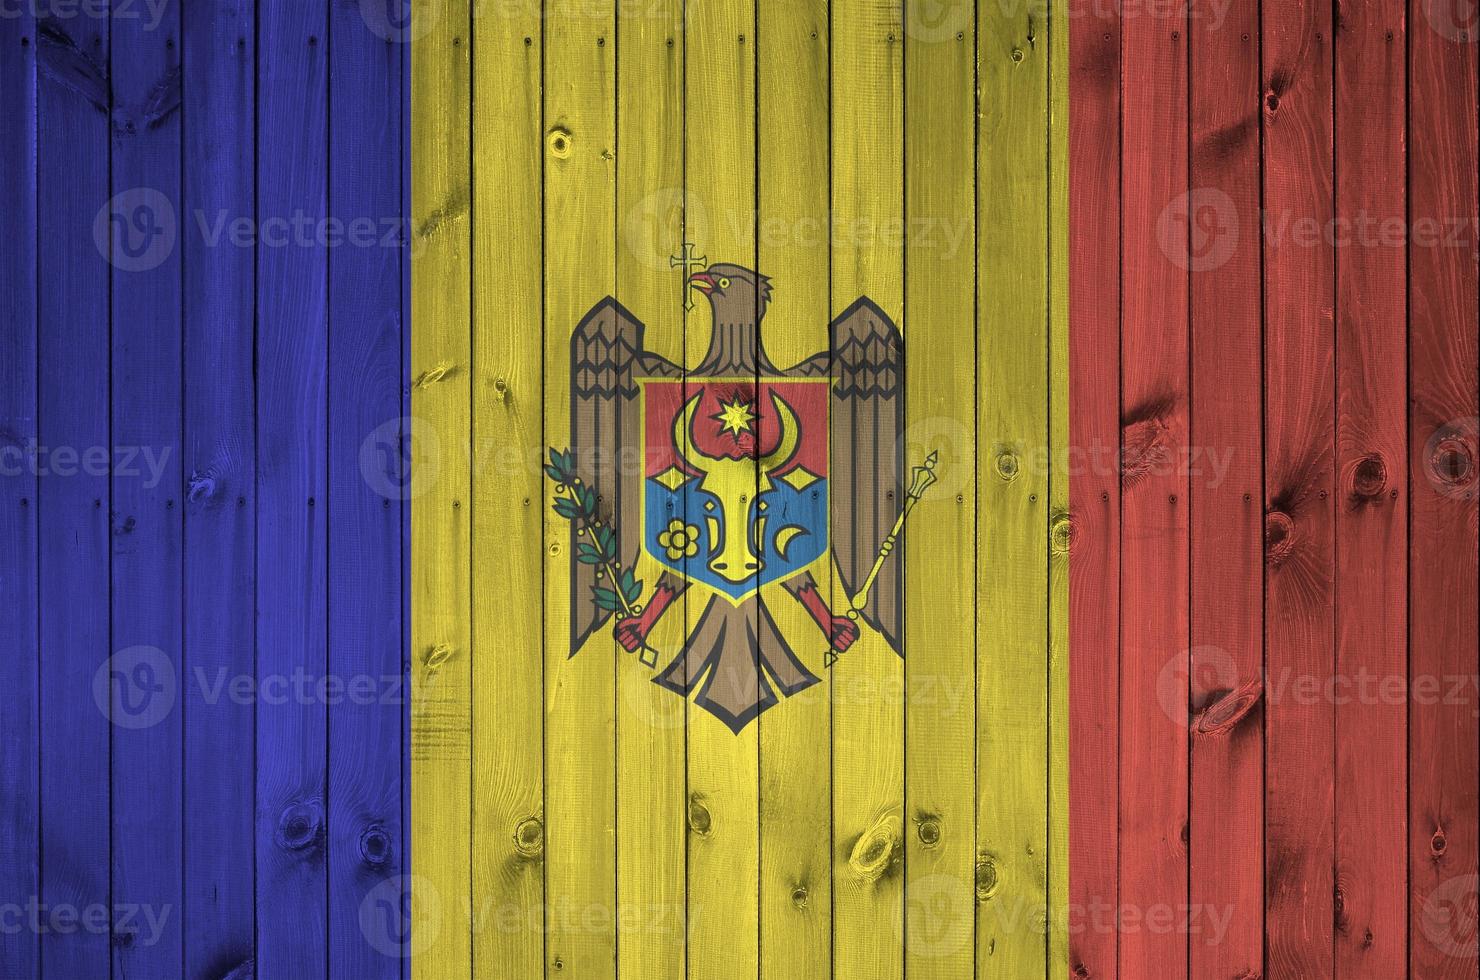 moldavien flagga avbildad i ljus måla färger på gammal trä- vägg. texturerad baner på grov bakgrund foto